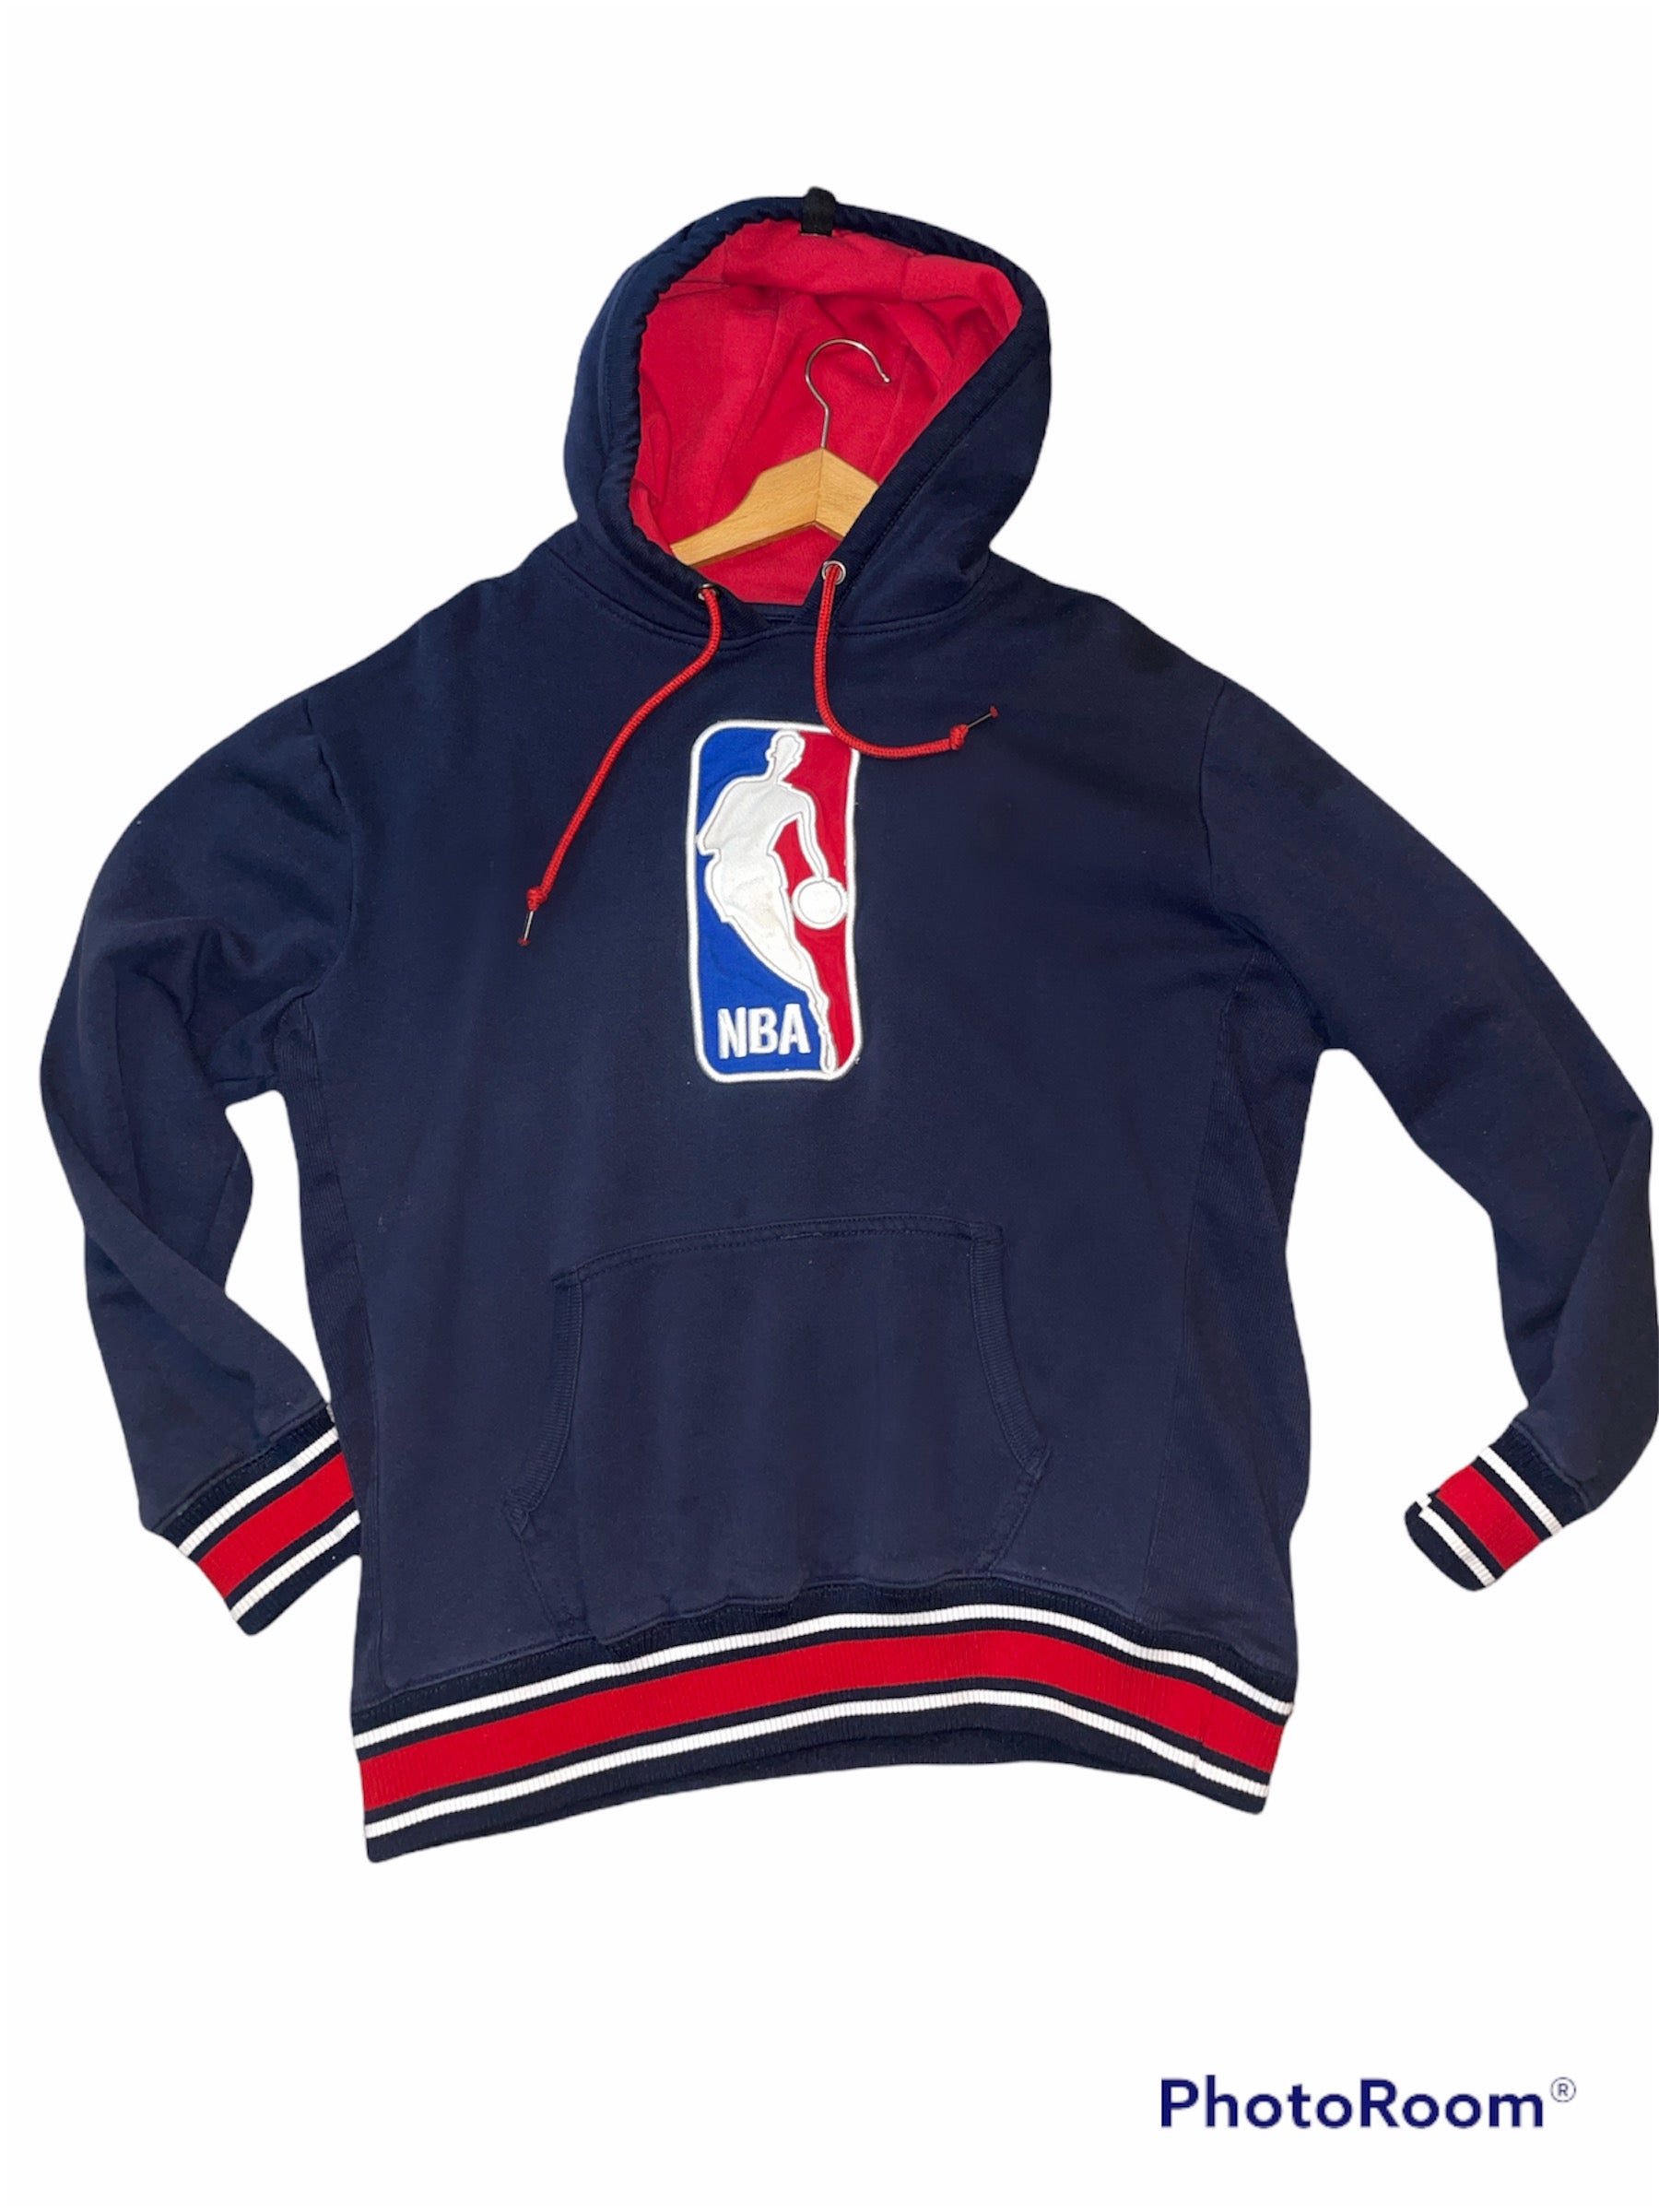 NBA Vintage Hoodies for Men